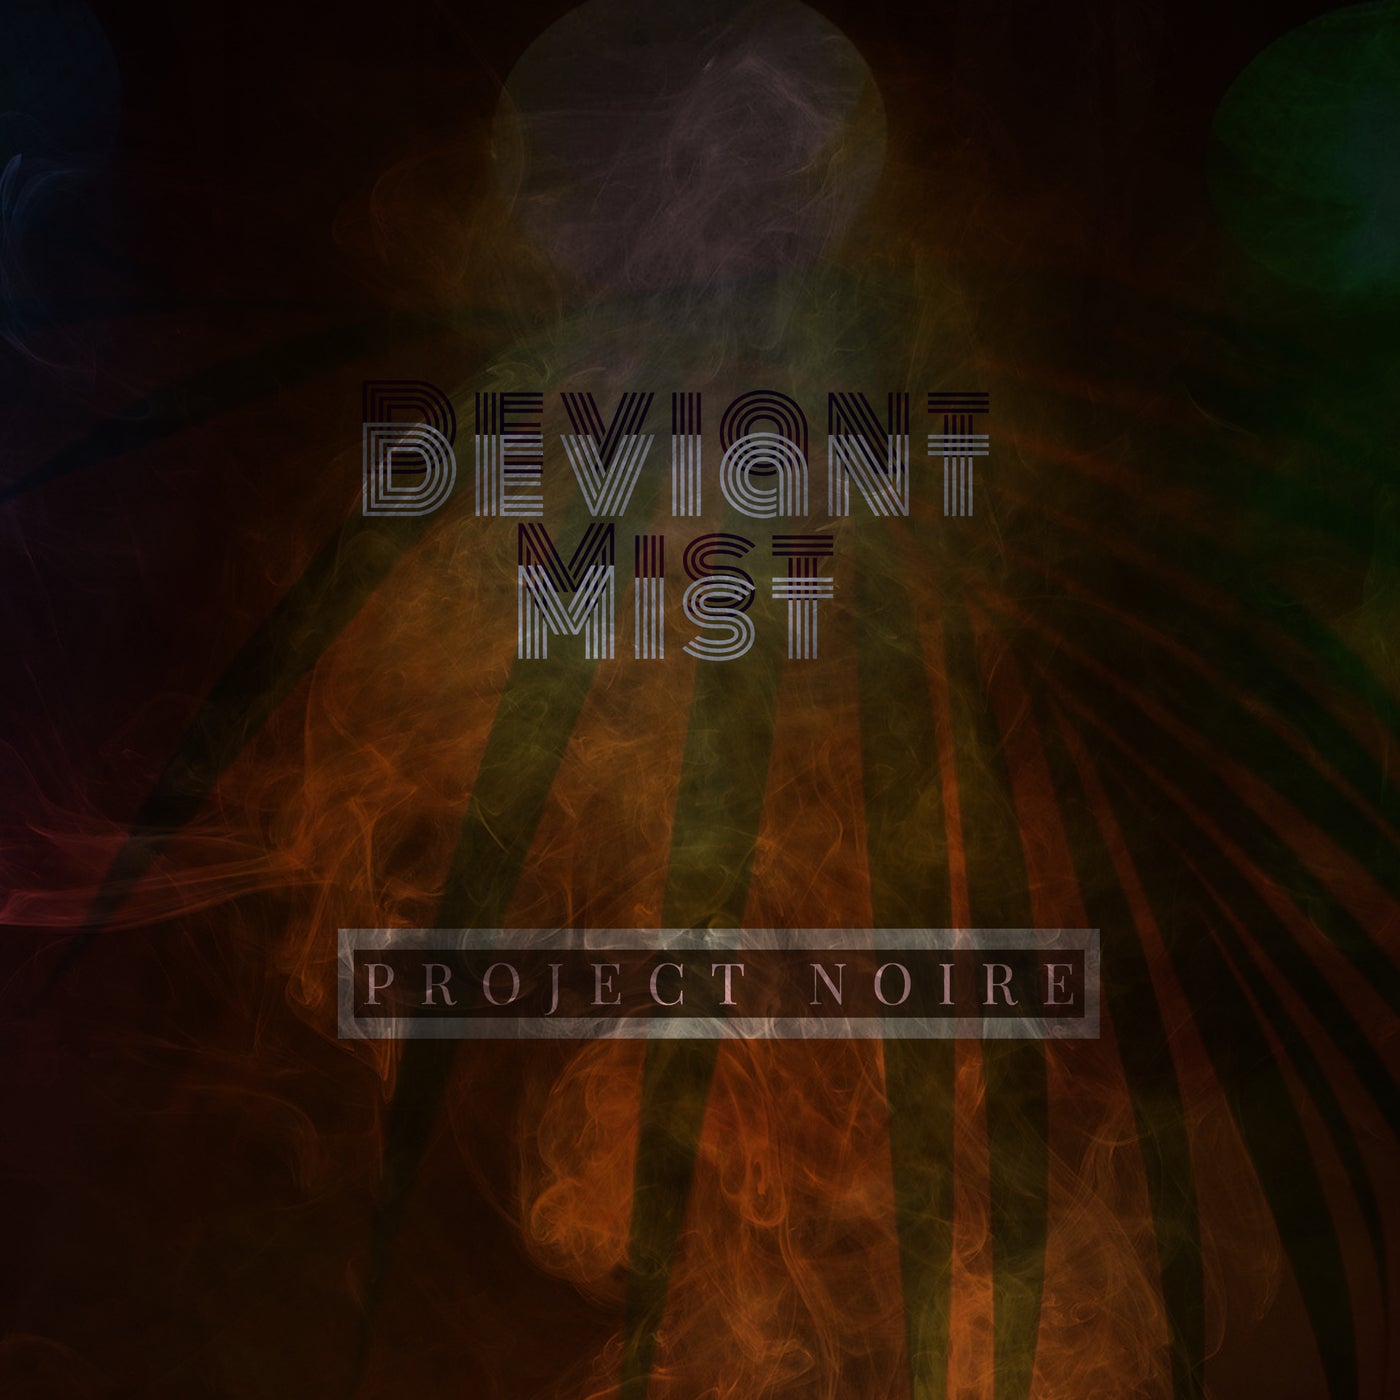 Deviant Mist